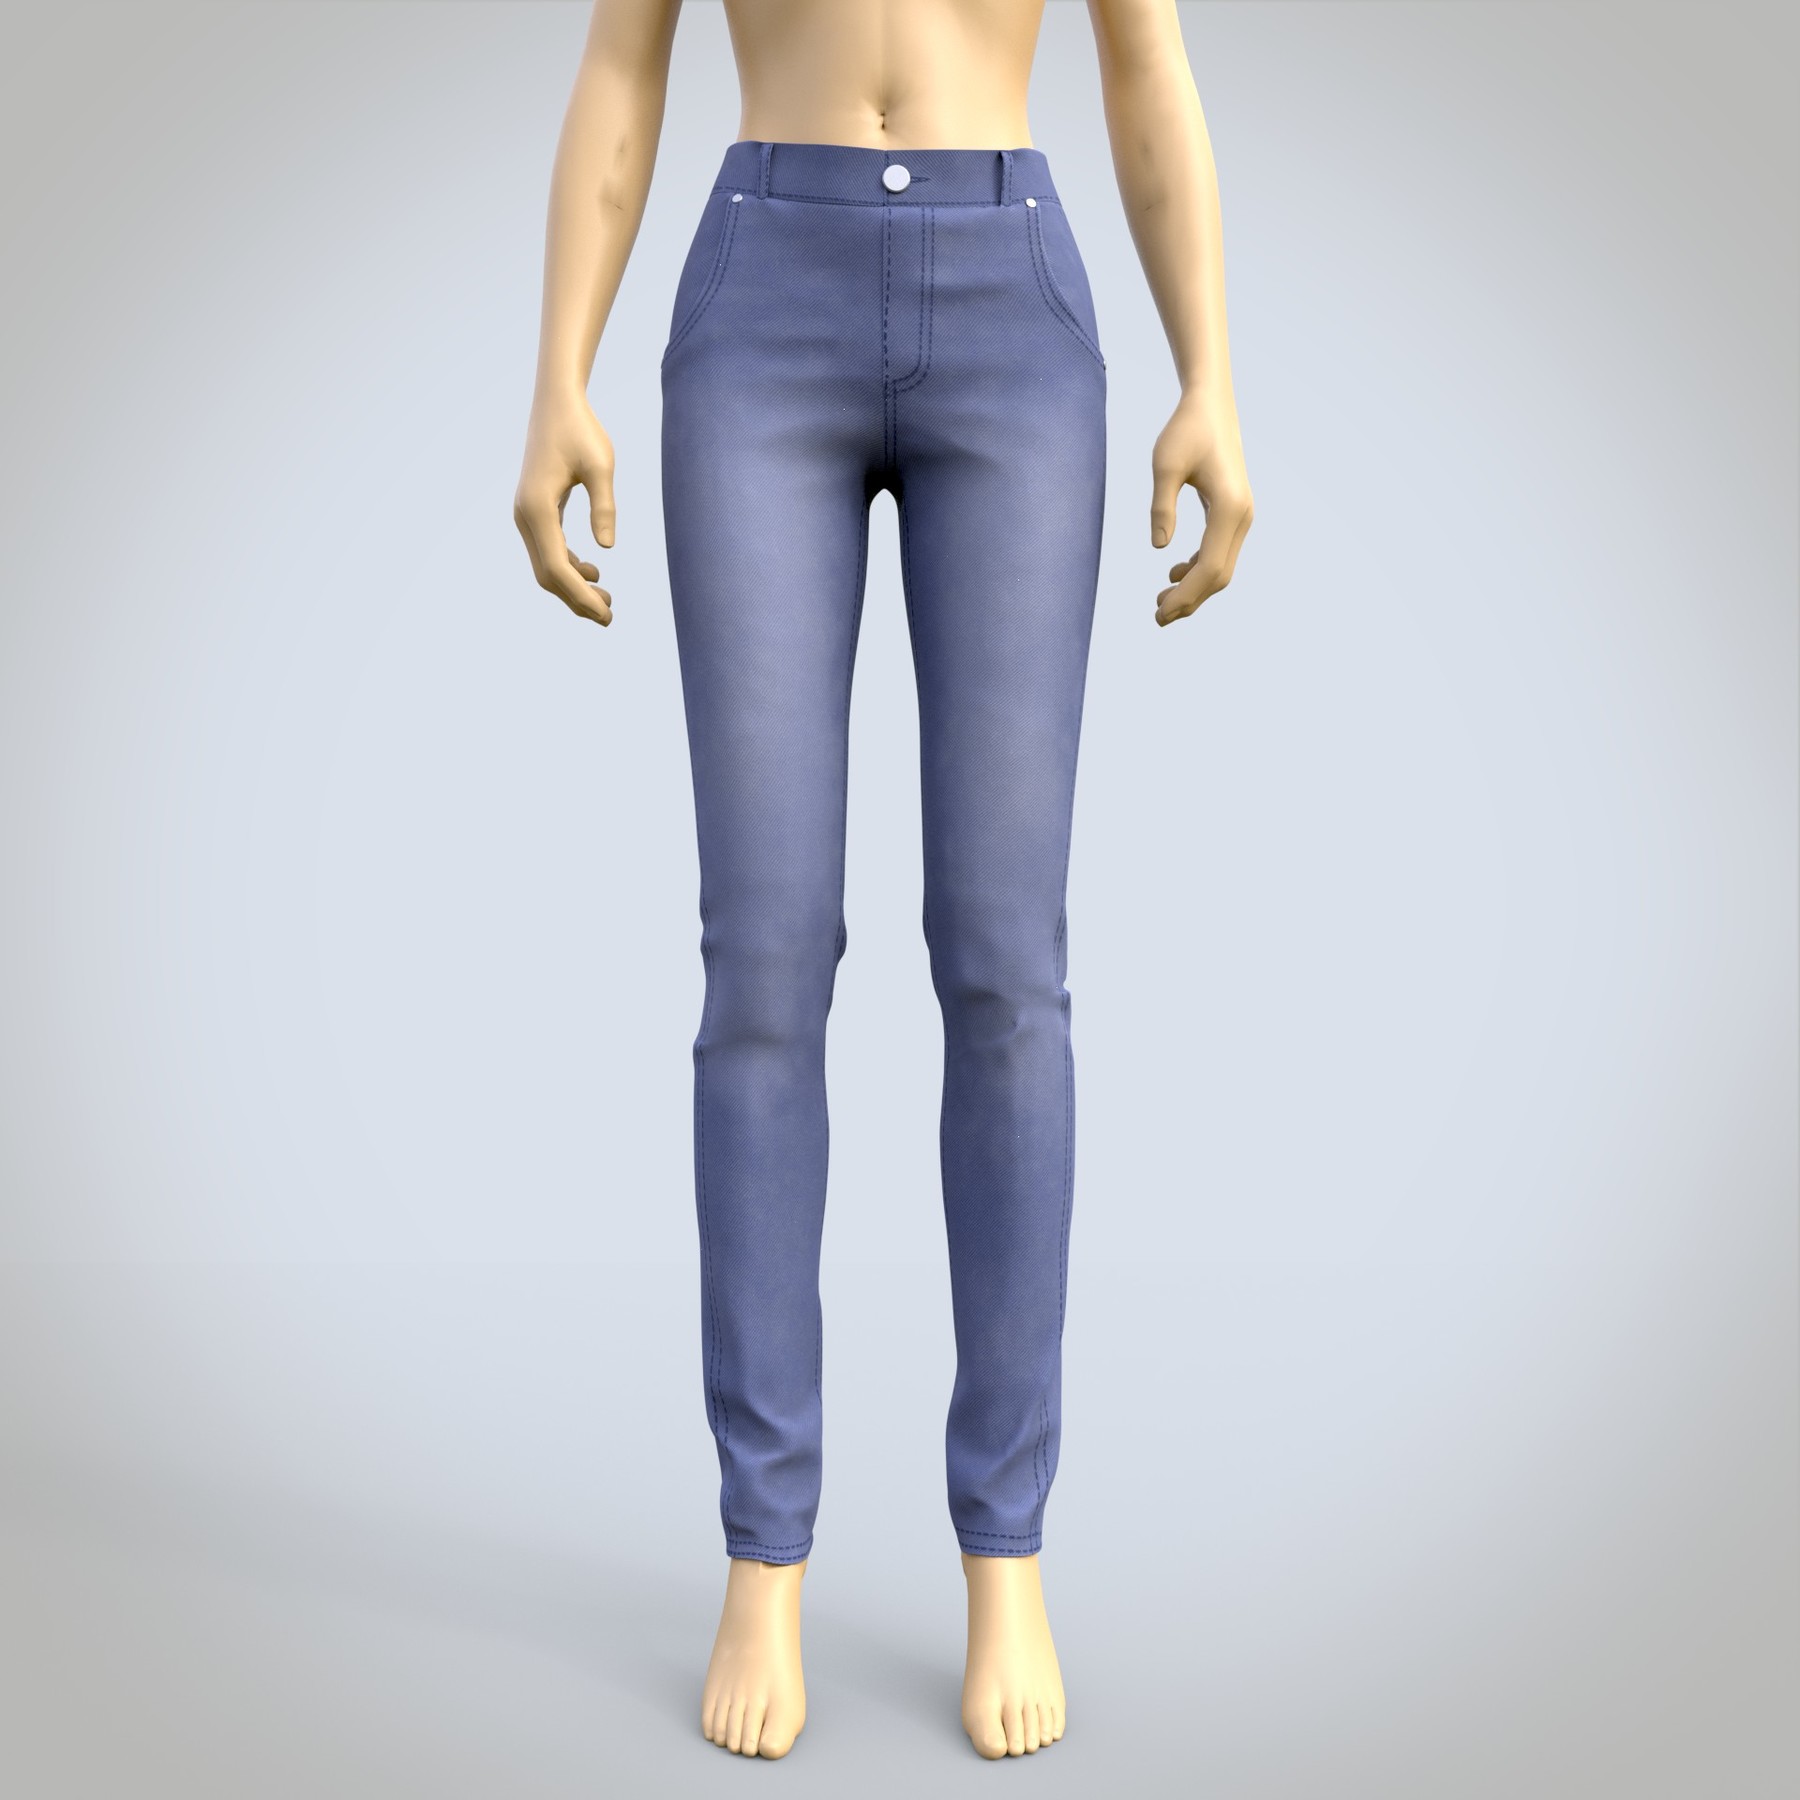 ArtStation - 3D female jeans denim pants Resources